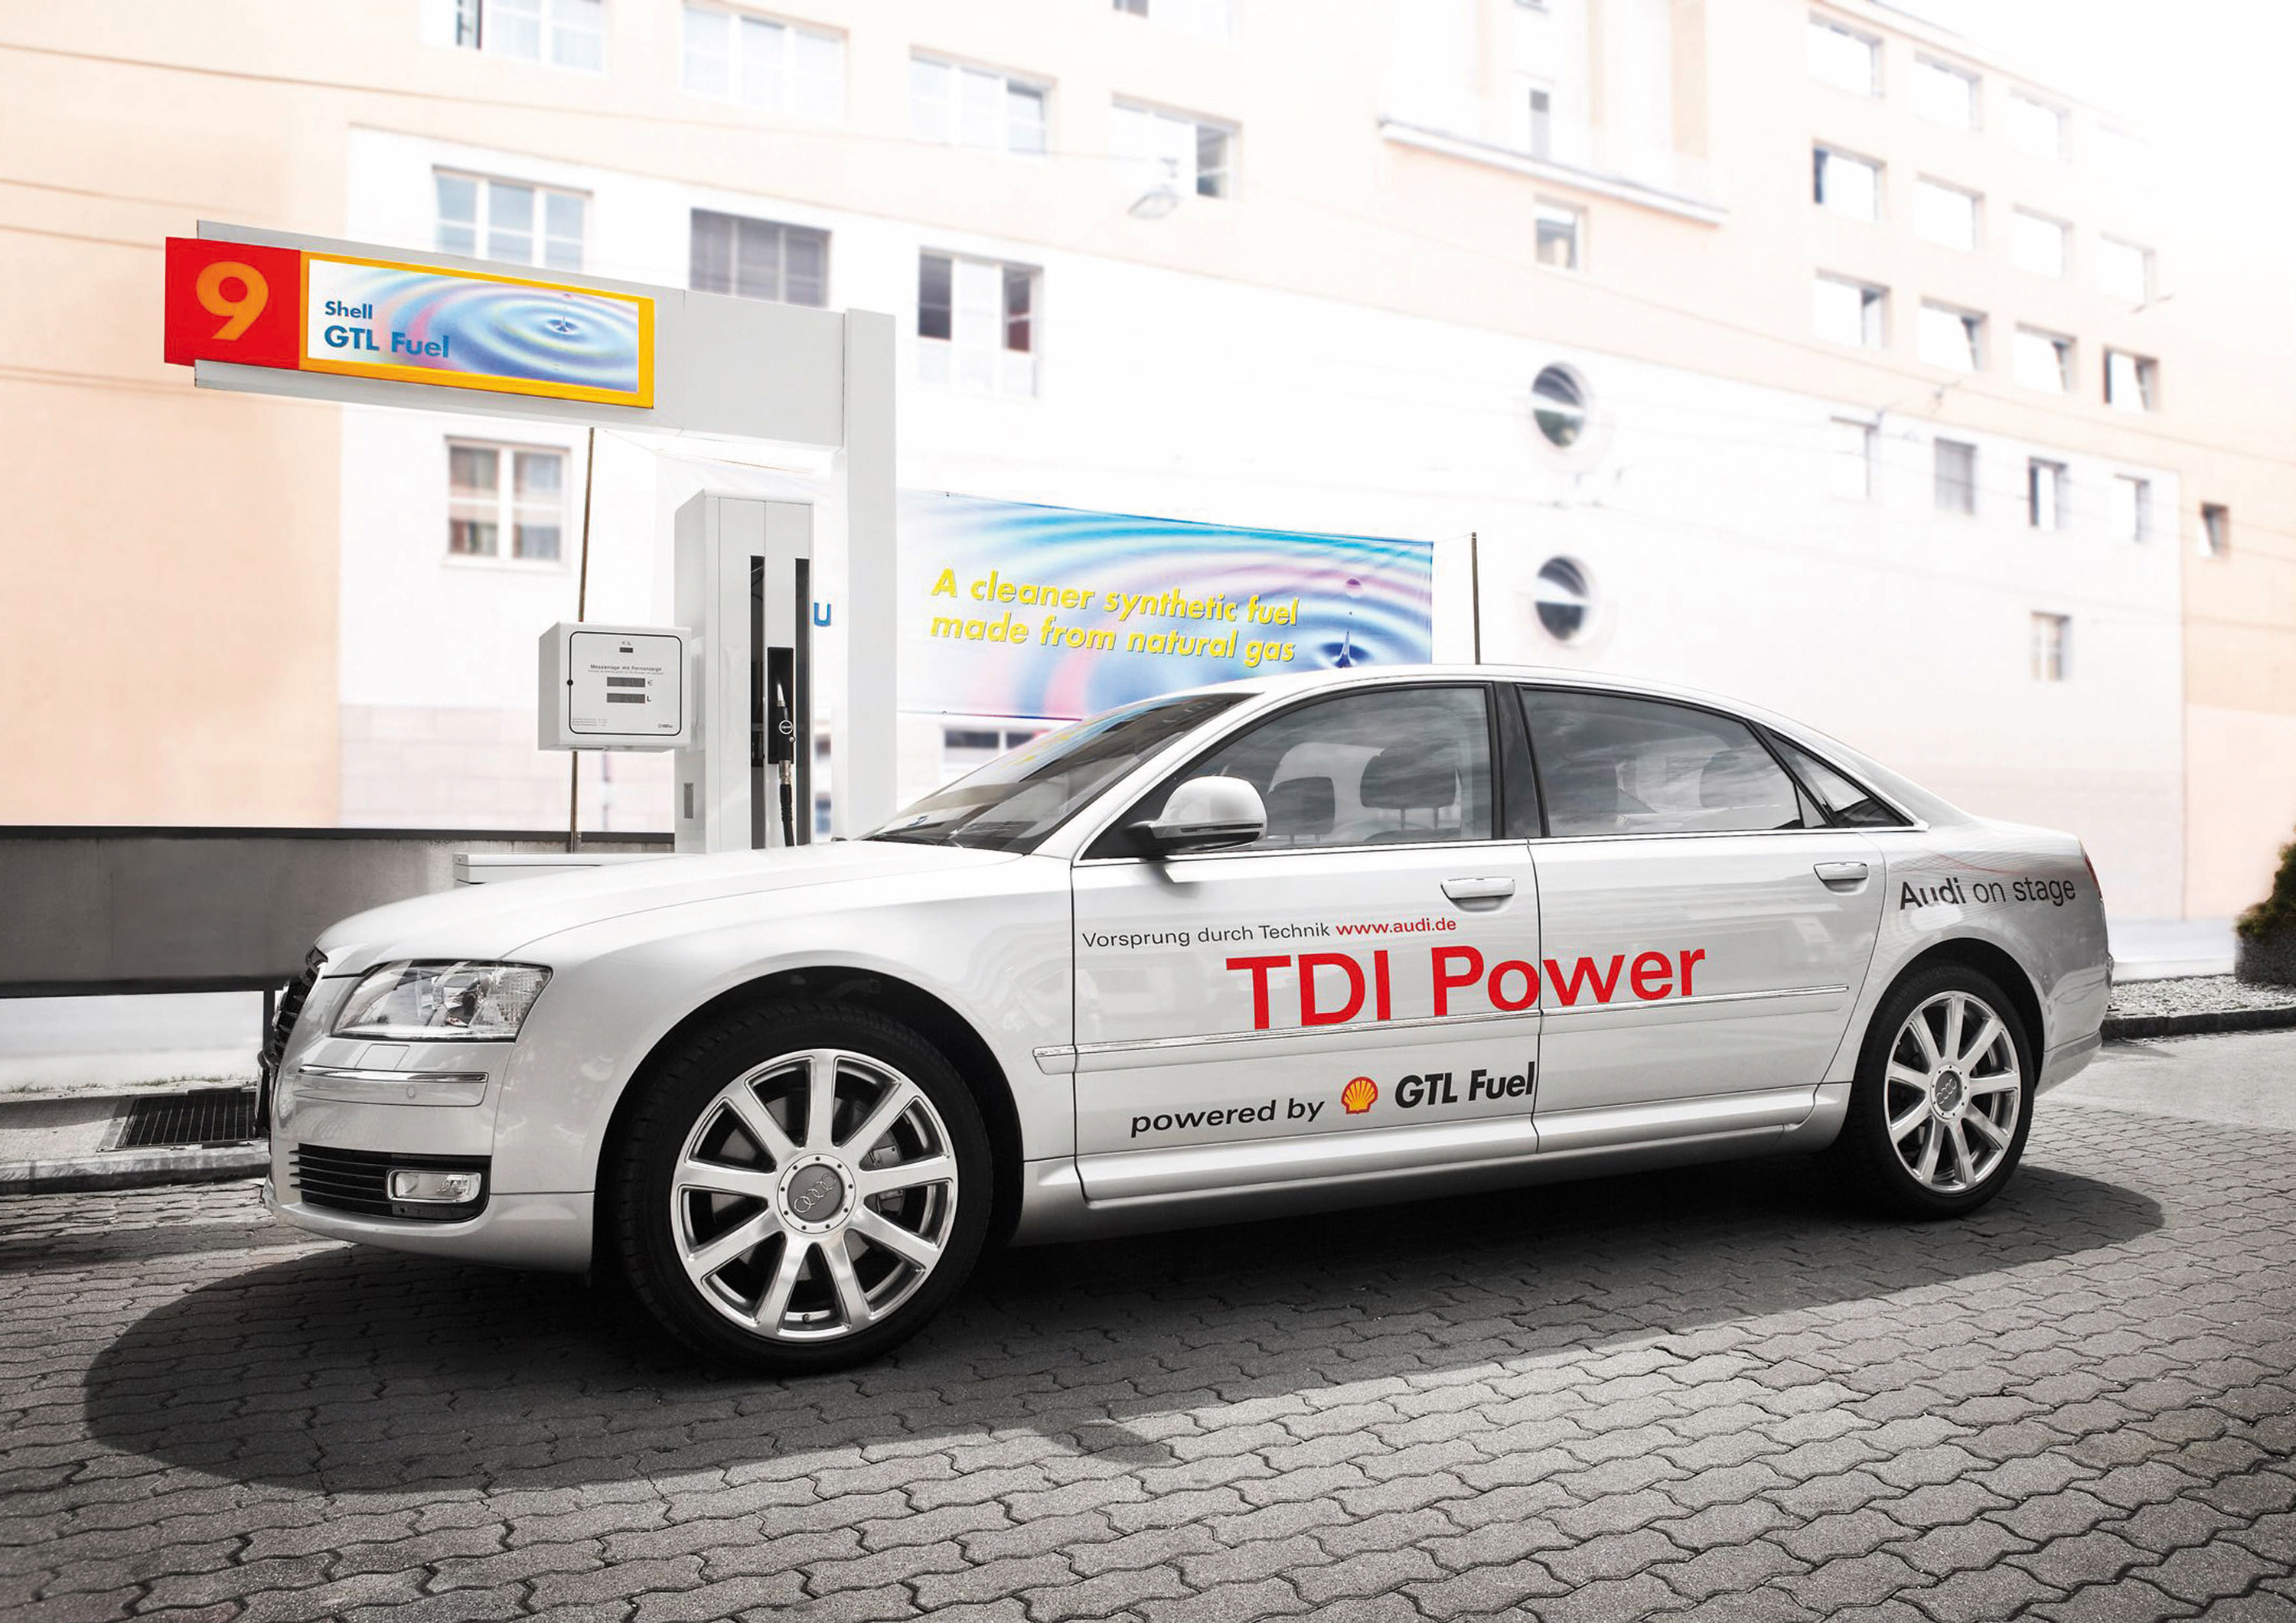 Audi GTI Power GTL Fuel